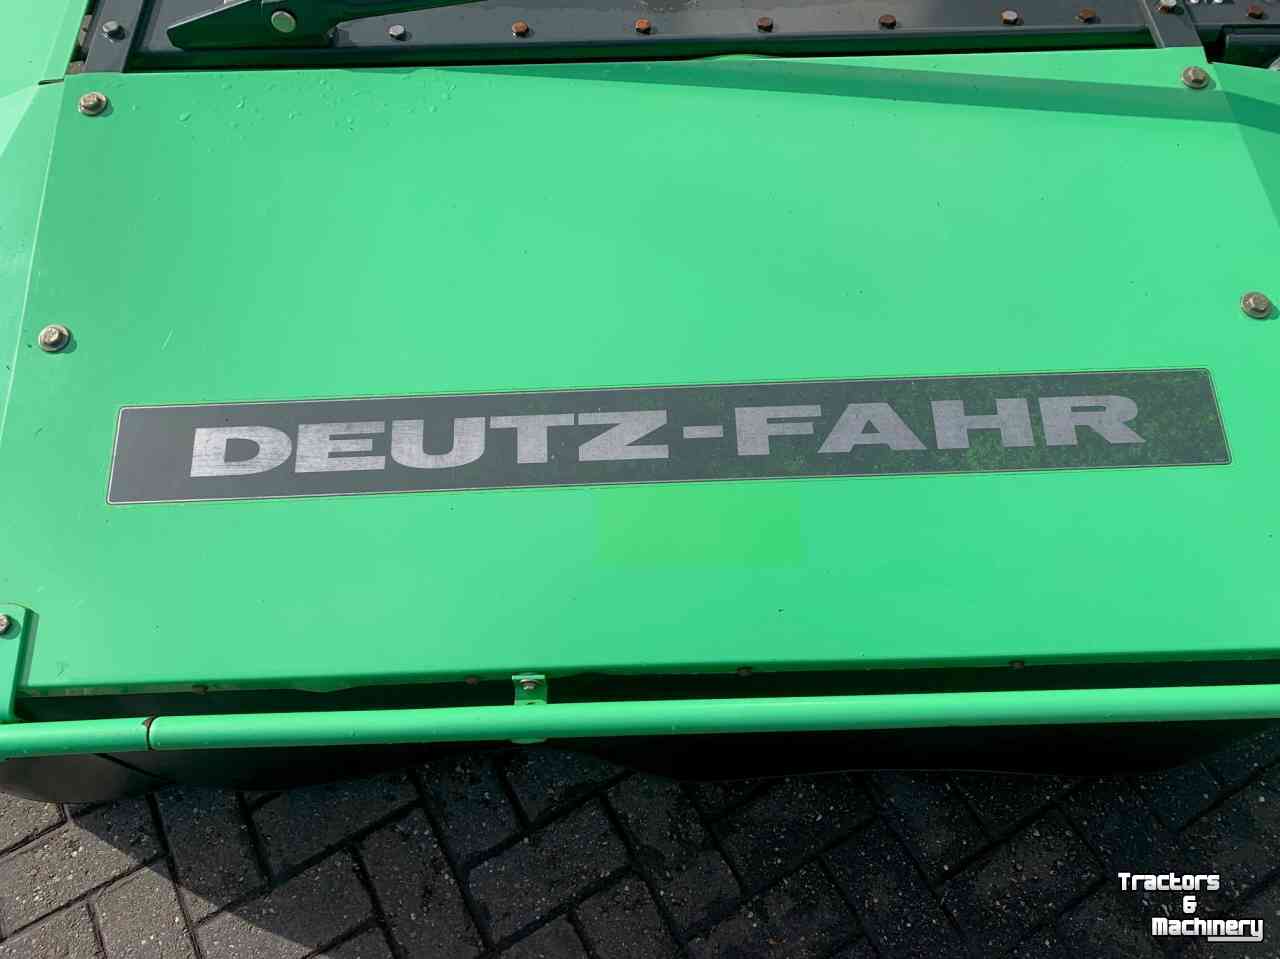 Mähwerk Deutz-Fahr KM 3.21  ( Kuhn PZ 220 )